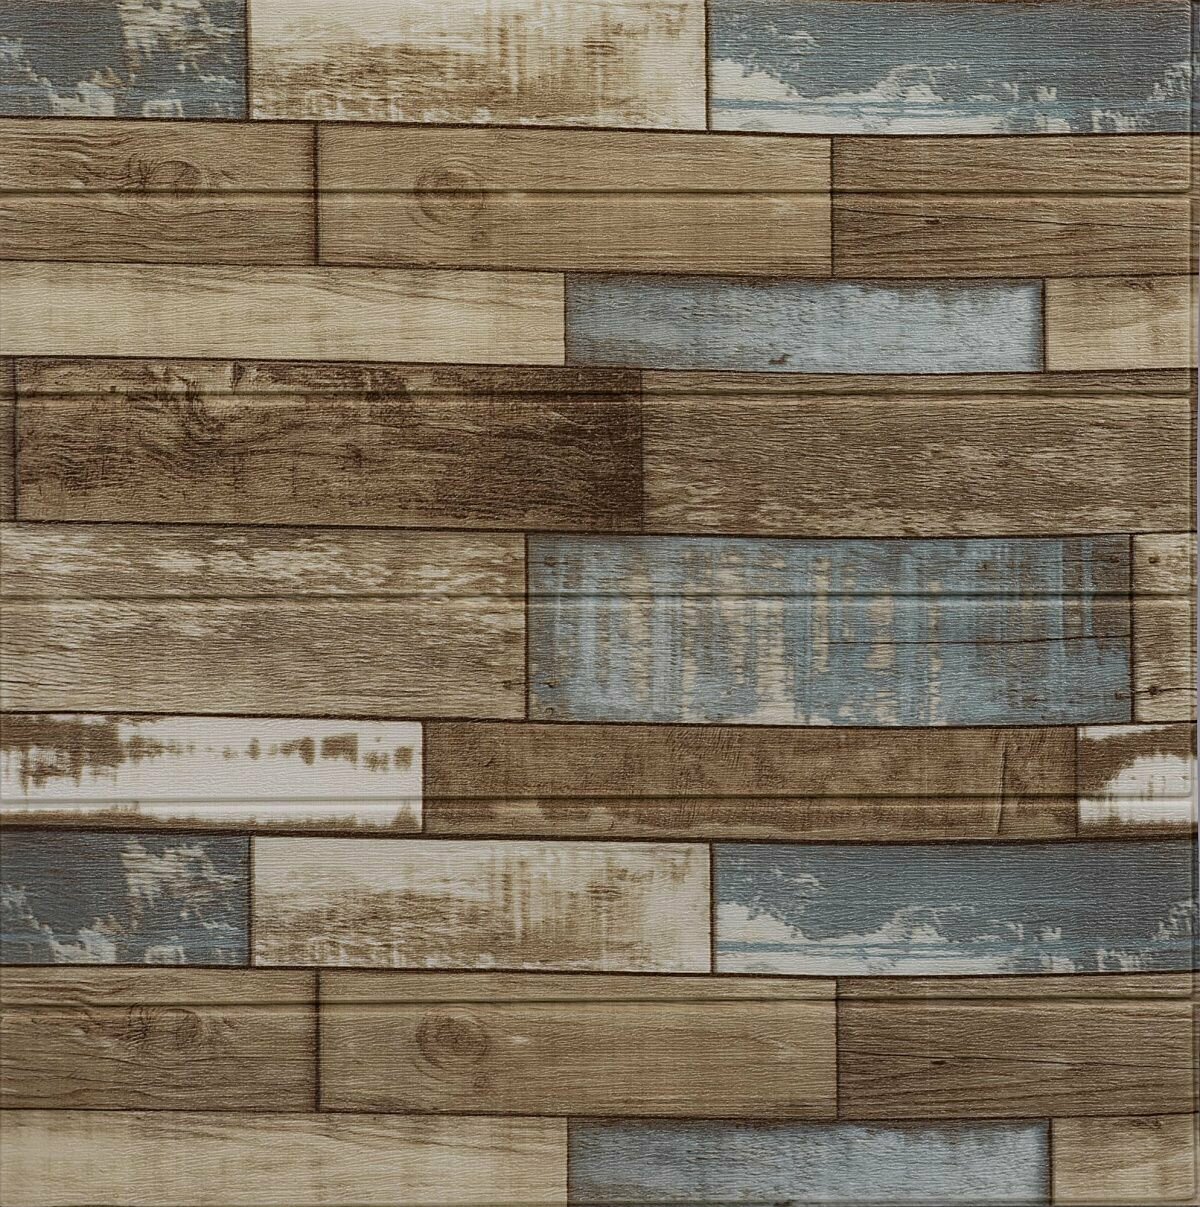 Стеновая панель "Деревянная мозаика" 3D 70х70 см бежево-синий цвет 1шт